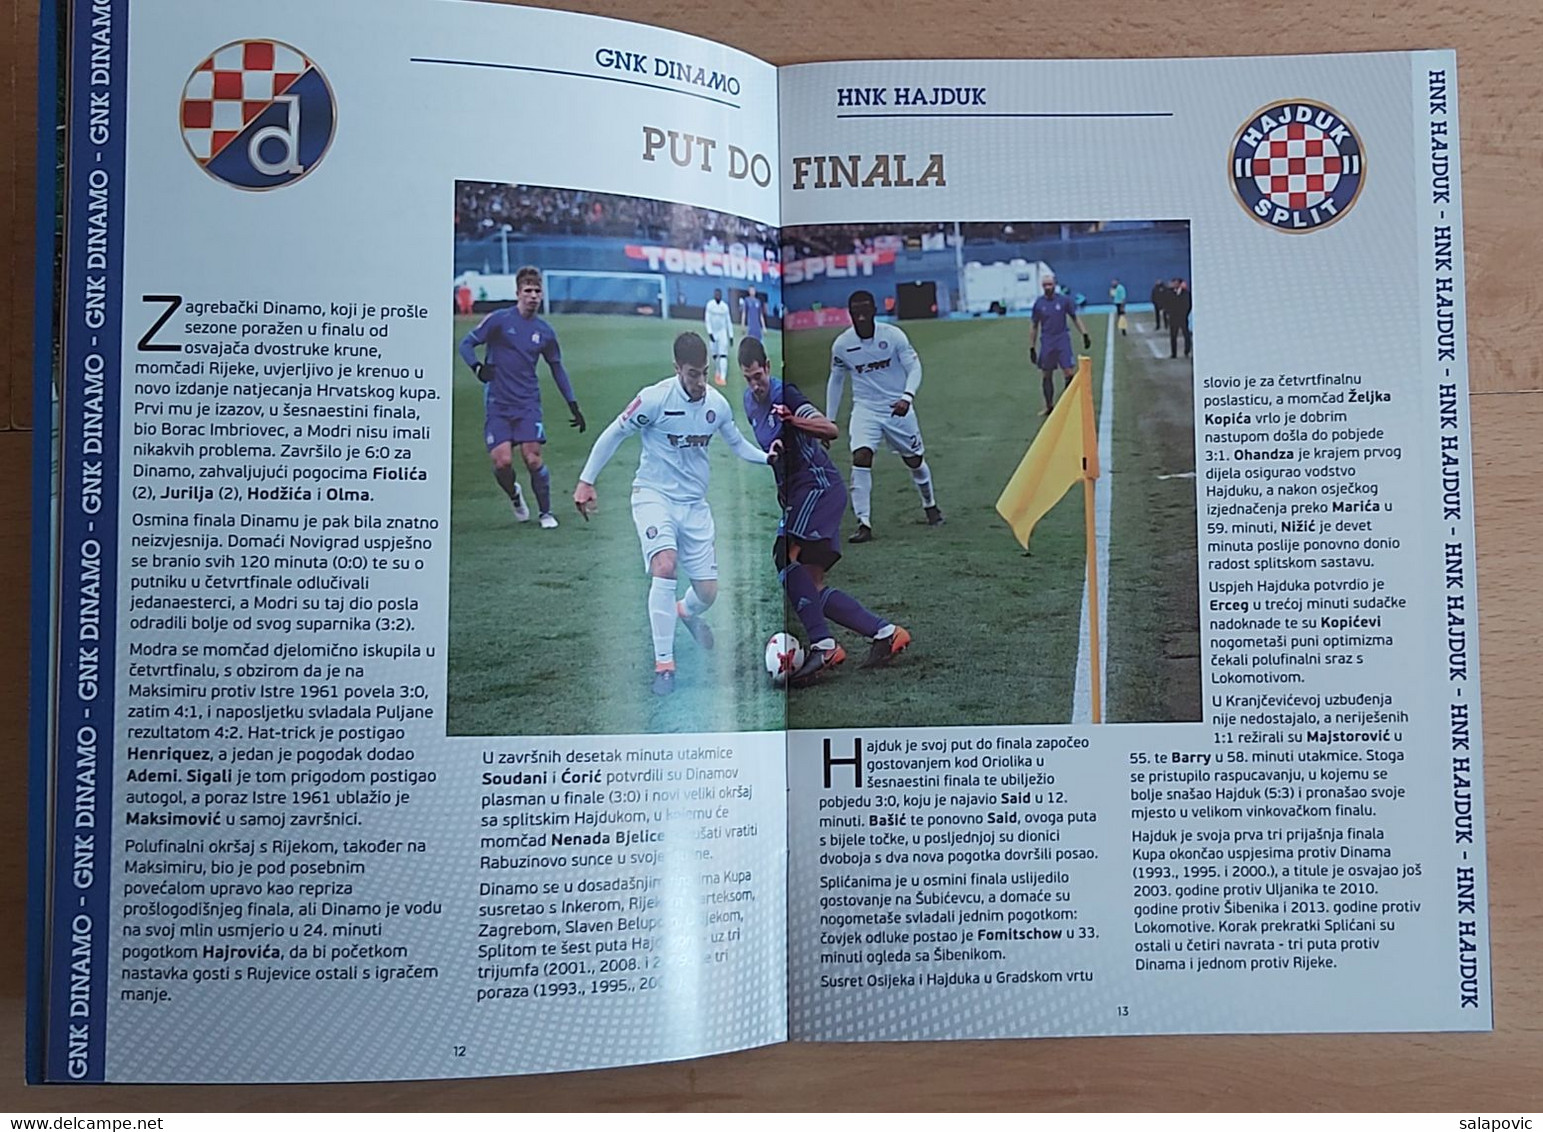 GNK DINAMO ZAGREB - HNK HAJDUK SPLIT 2018 Finals Of The Croatian Football Cup FOOTBALL CROATIA FOOTBALL MATCH PROGRAM - Books